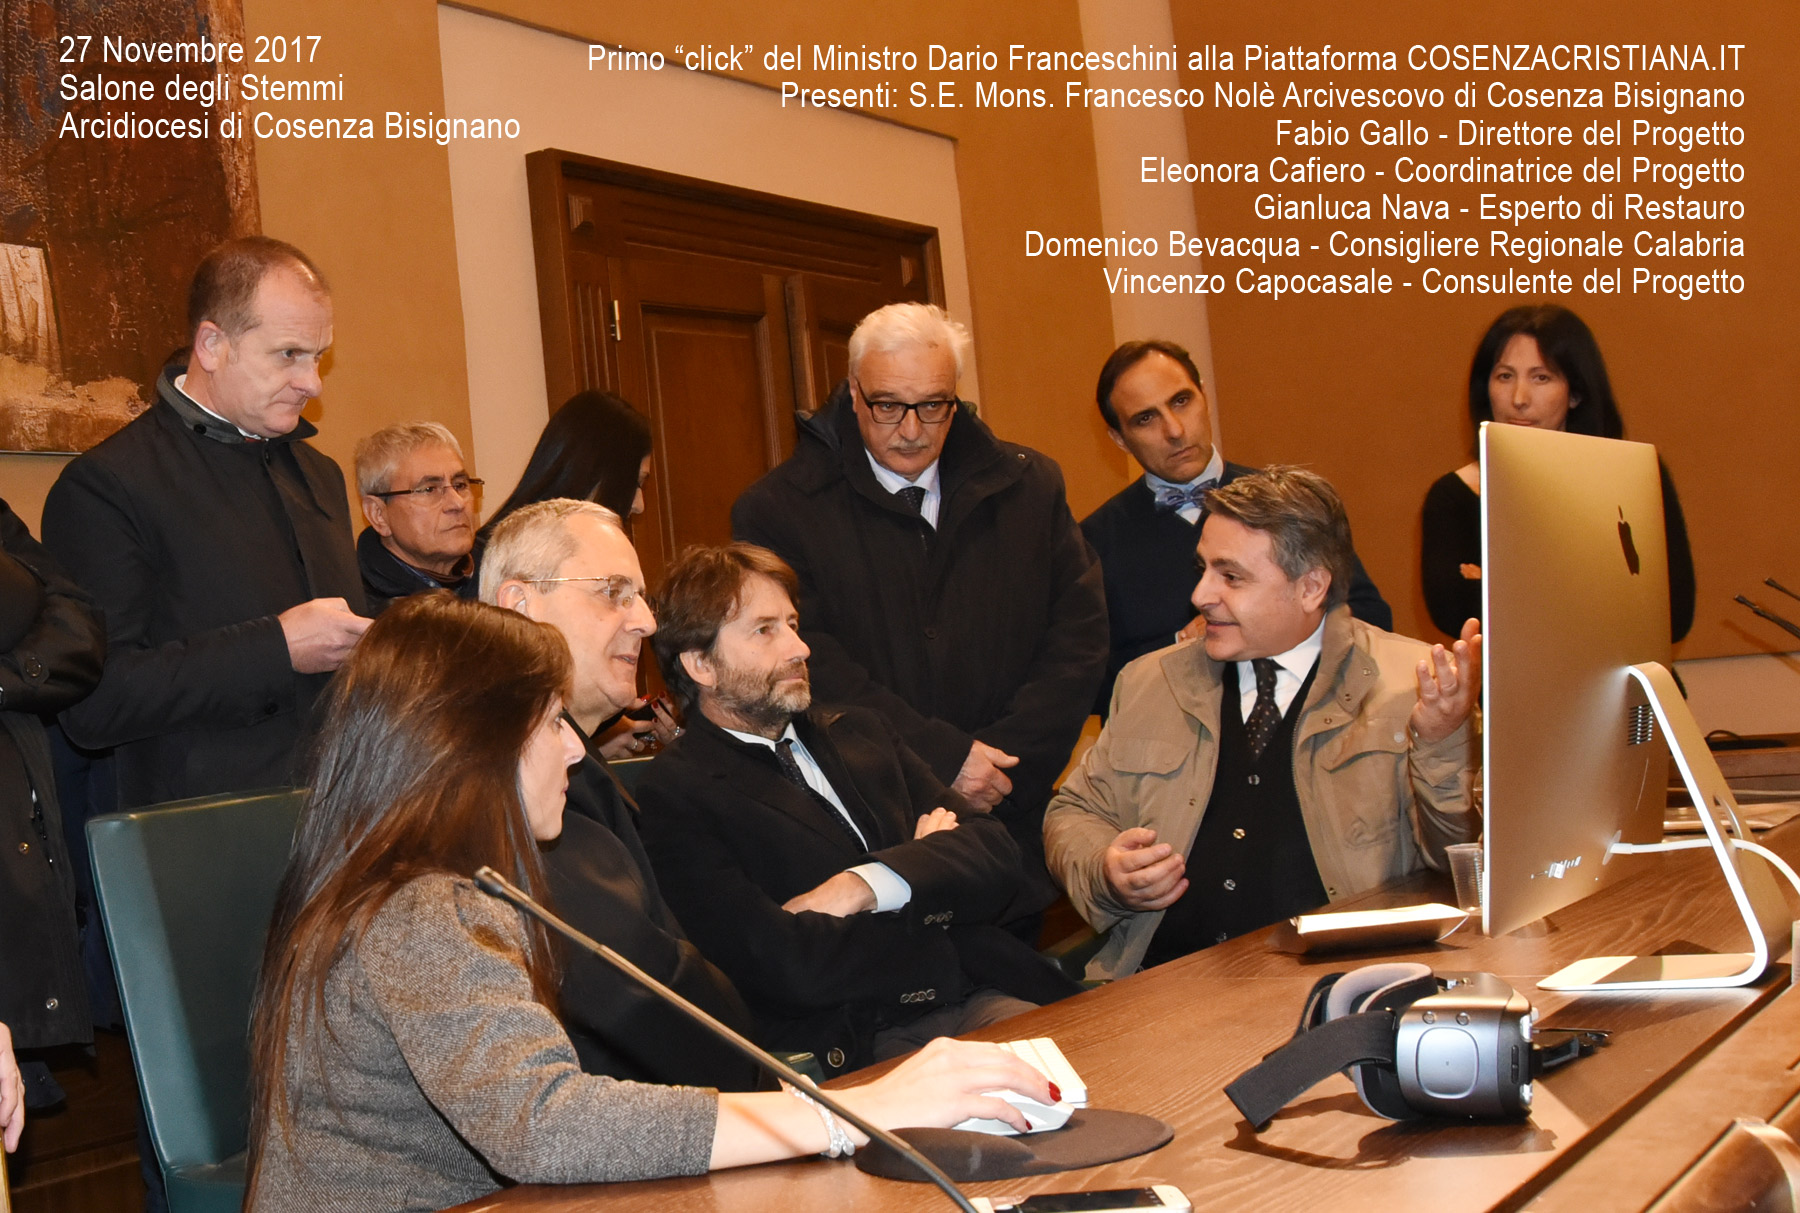 Il Ministro Dario Franceschini inaugura la Piattaforma di valorizzazione dei Beni Culturali della Città Storica di Cosenza "Cosenza Cristiana"